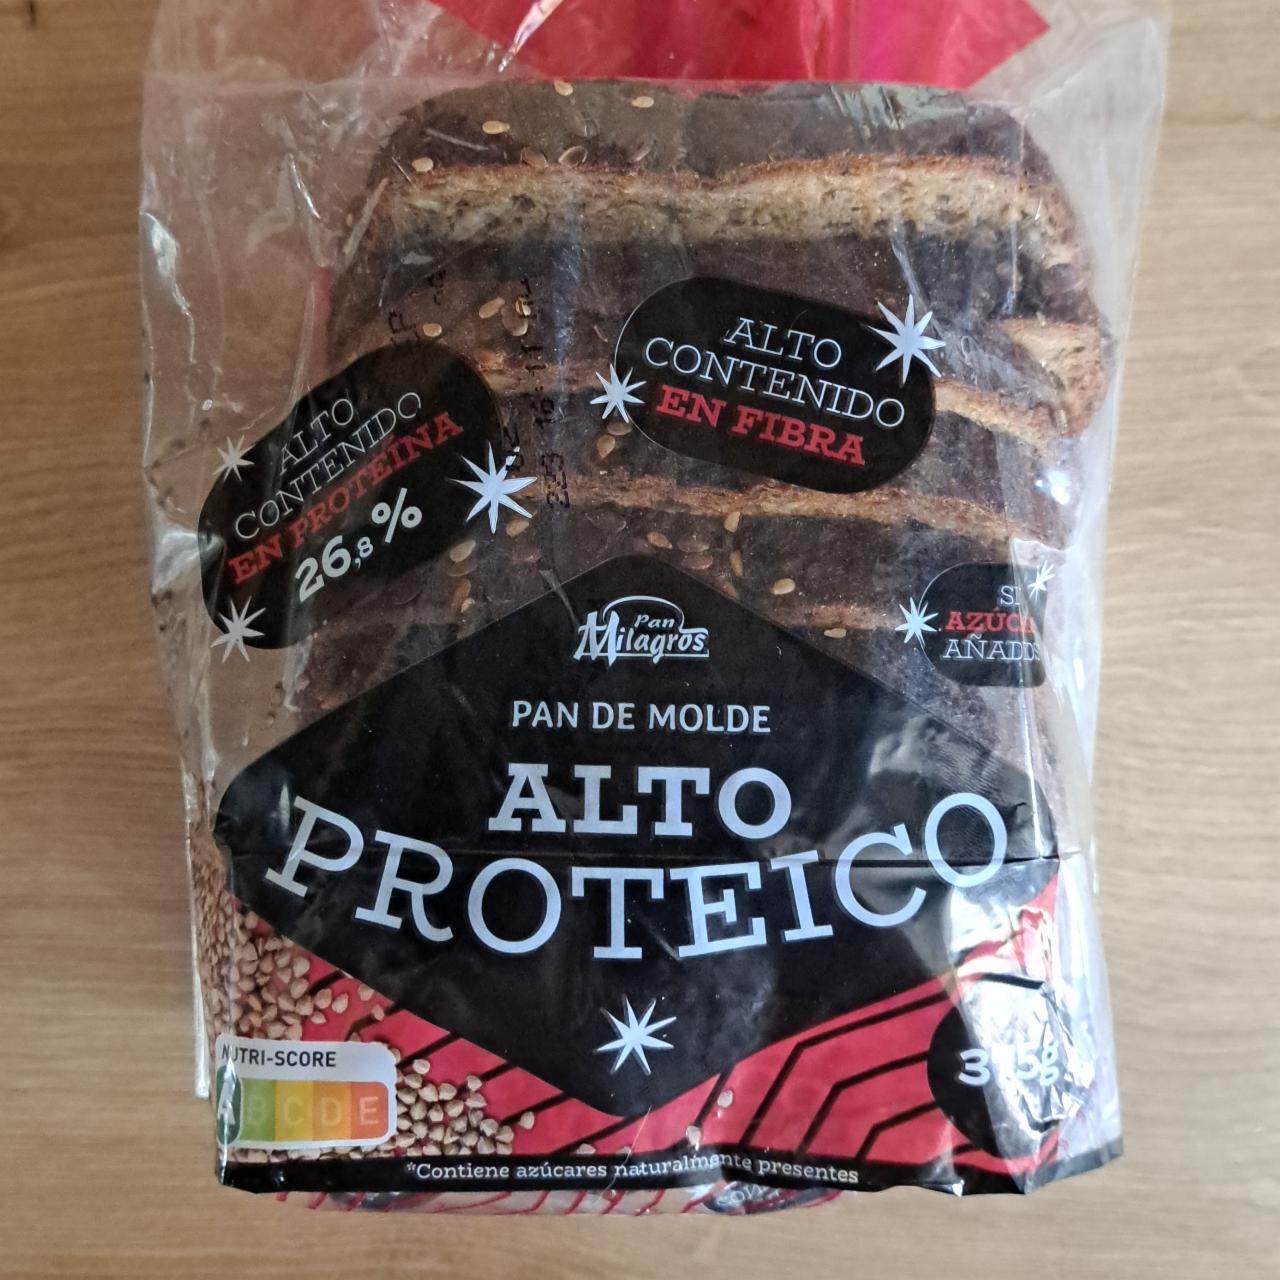 Фото - хлеб ржаной цельноезрновой с кунжутом формовой Pan de molde Alto Proteico Migros